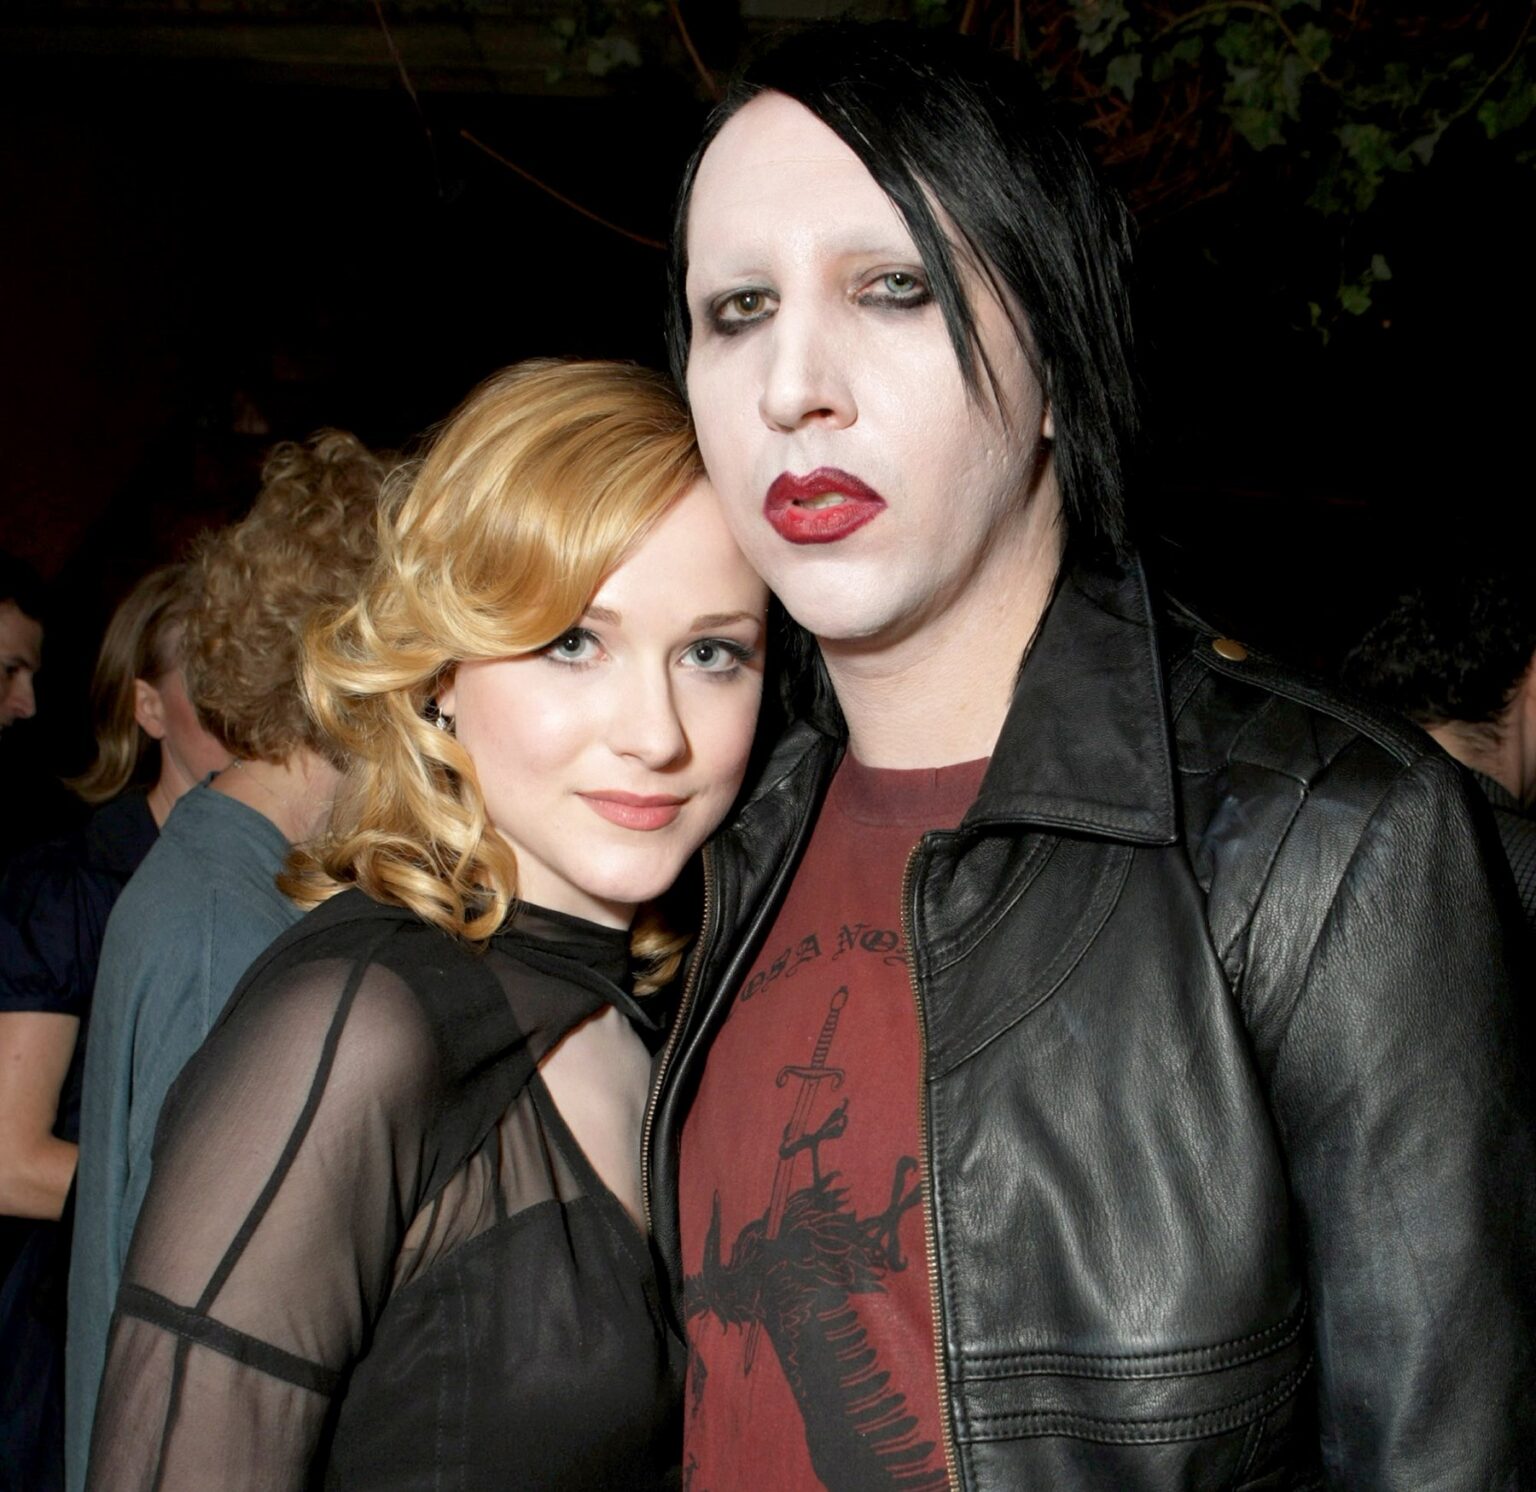 El desgarrador testimonio de Evan Rachel Wood sobre su relación abusiva. ¿Se trata de Marilyn Manson? Descúbrelo aquí.